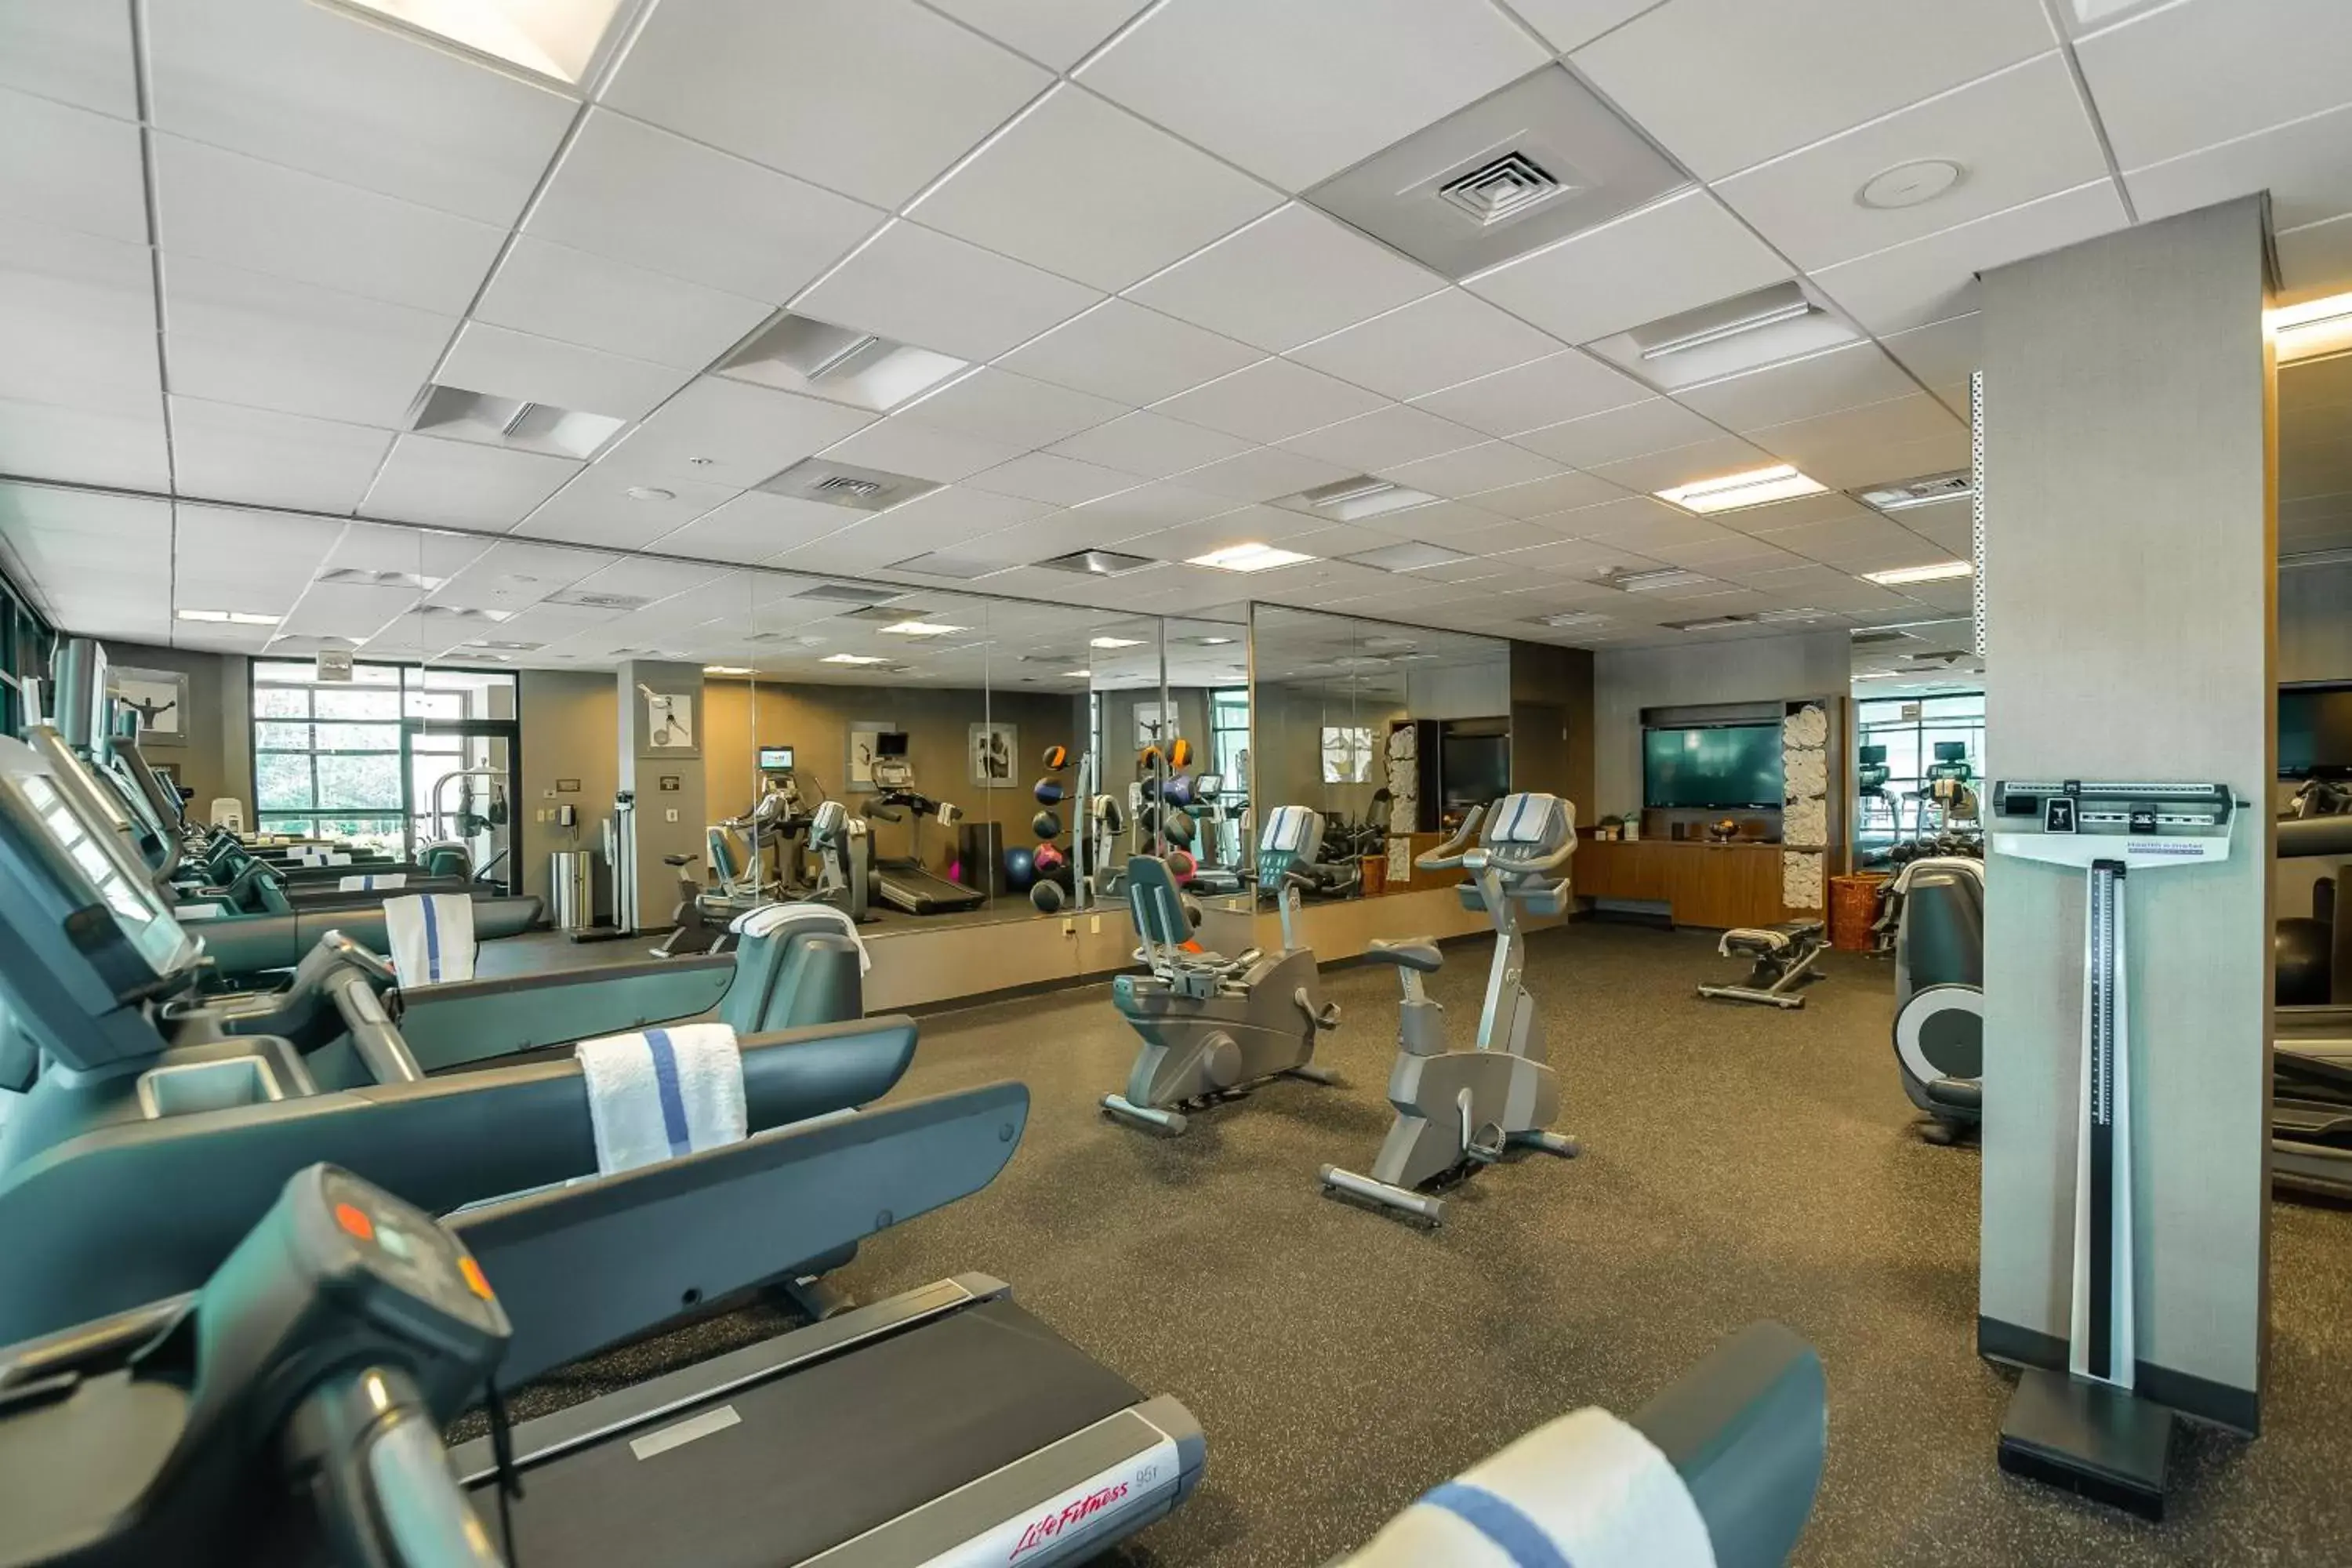 Fitness centre/facilities, Fitness Center/Facilities in Richmond Marriott Short Pump